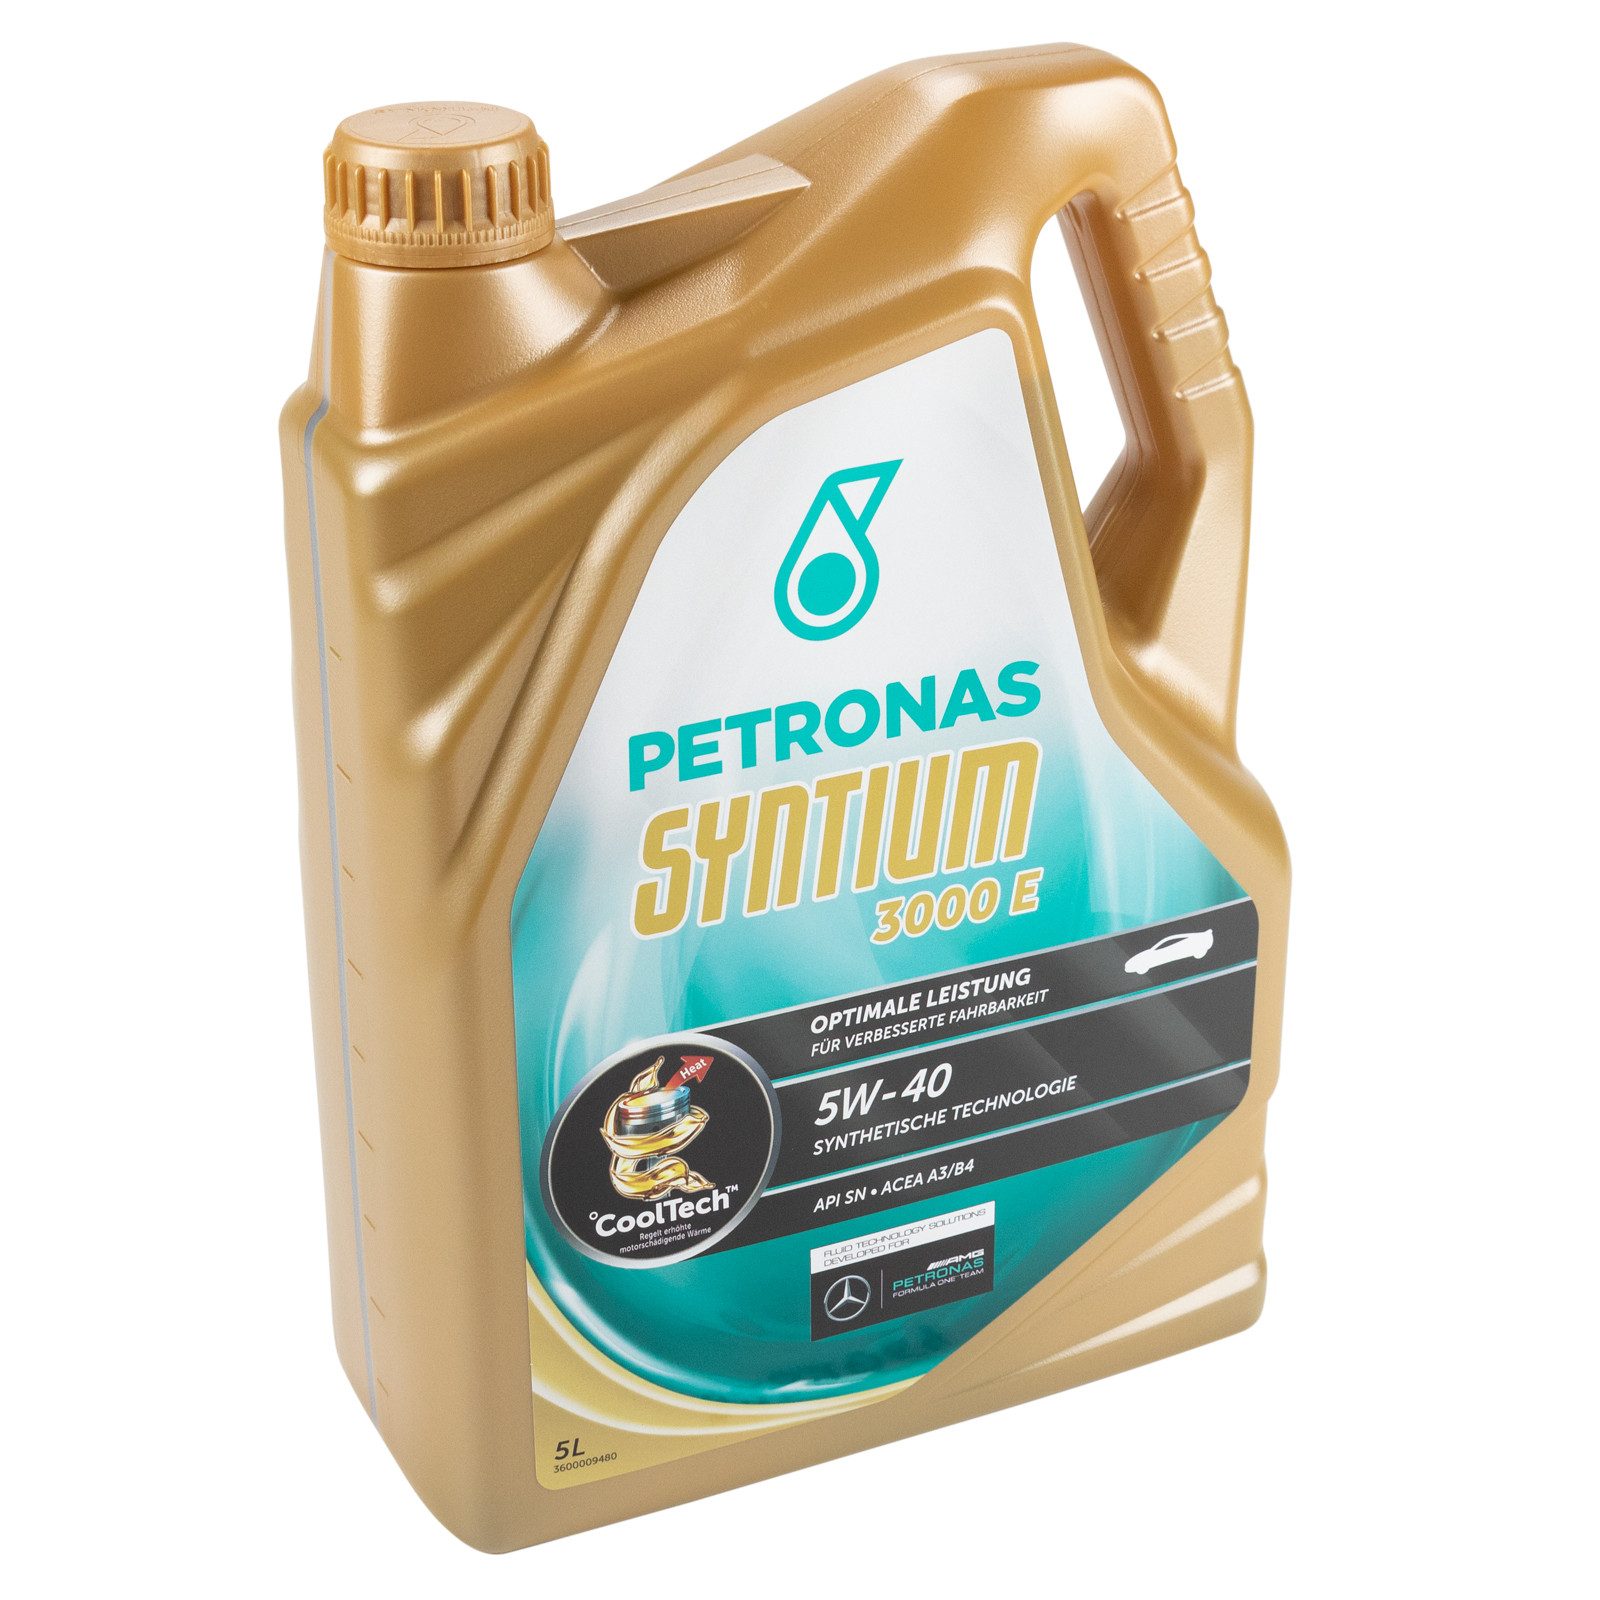 Petronas Öl-Additiv Petronas Syntium 3000 E 5W40 5 Liter 18055019, 5 l